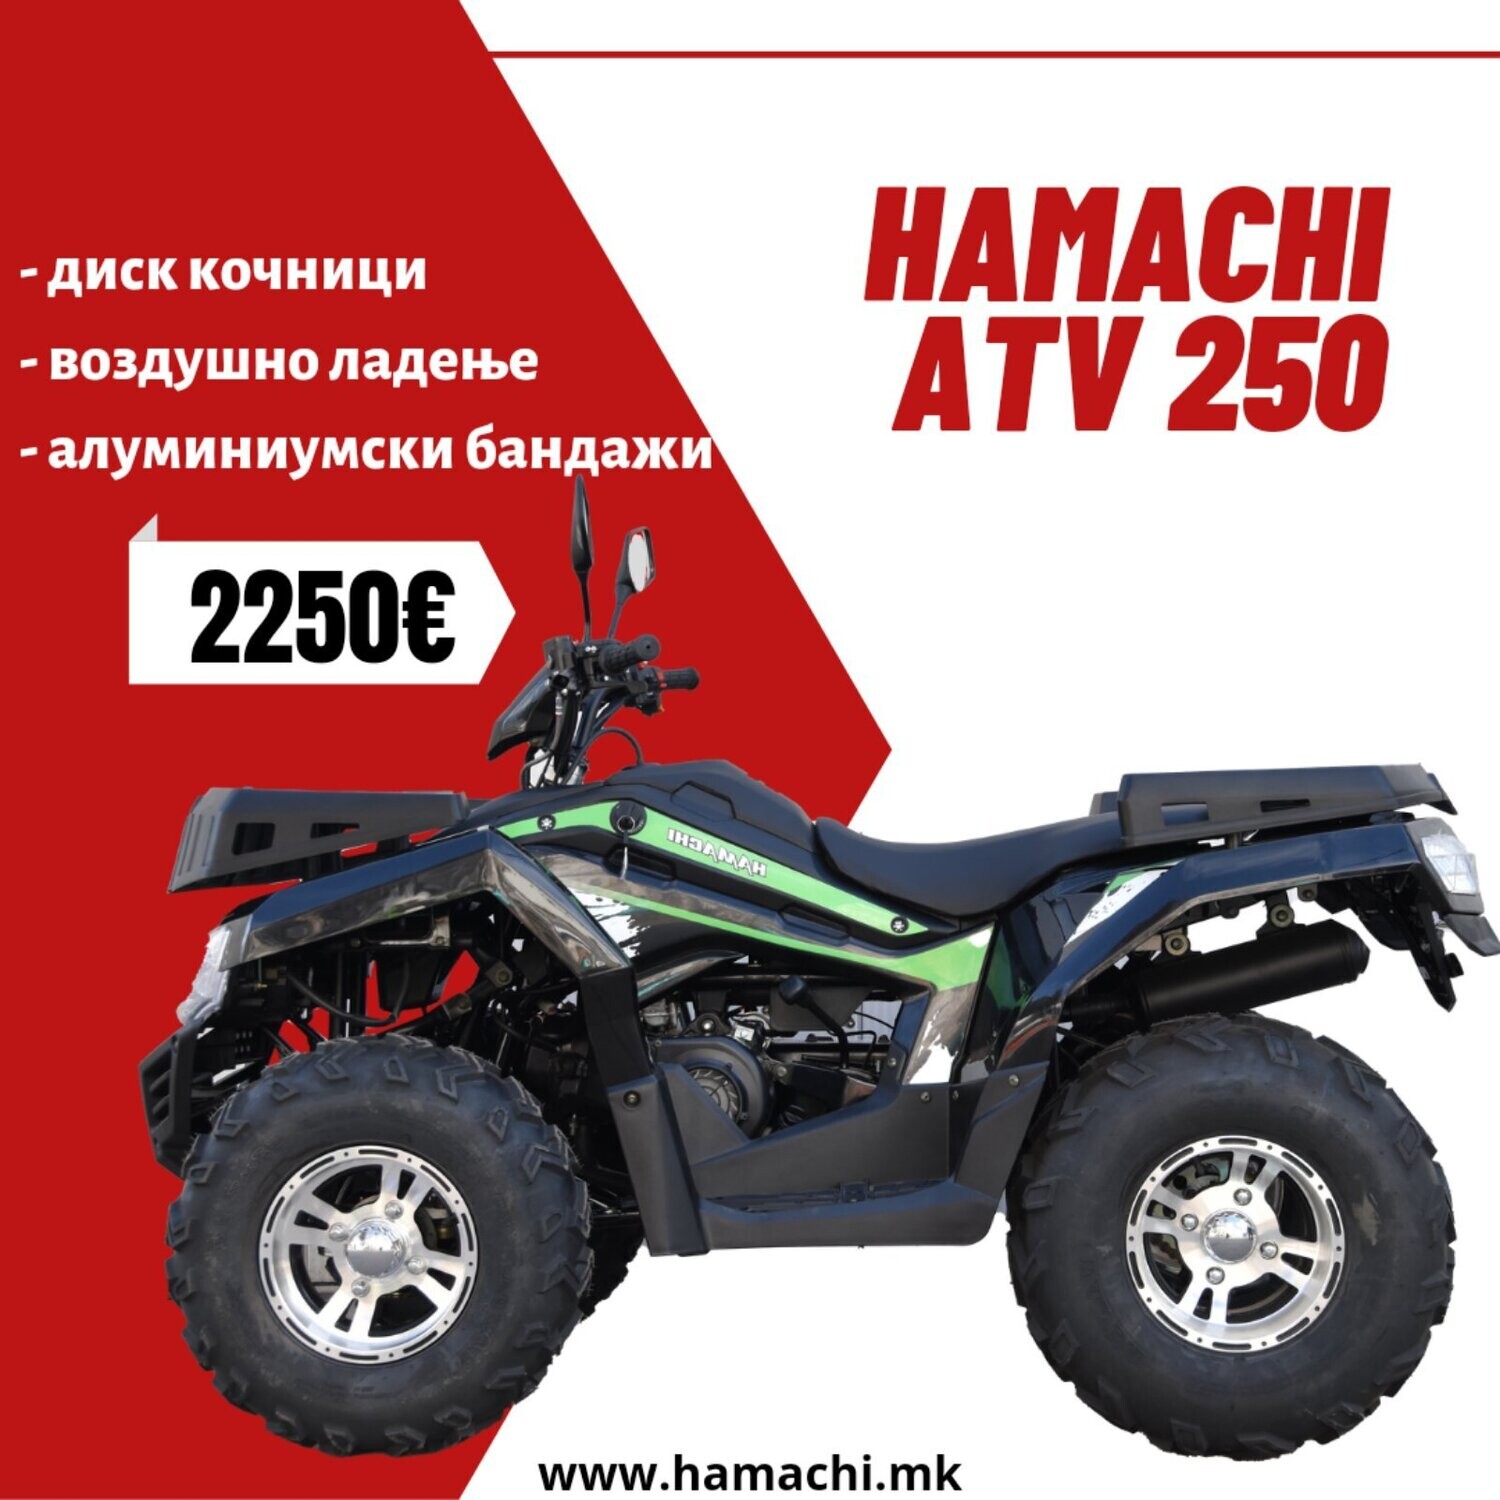 HAMACHI ATV 250